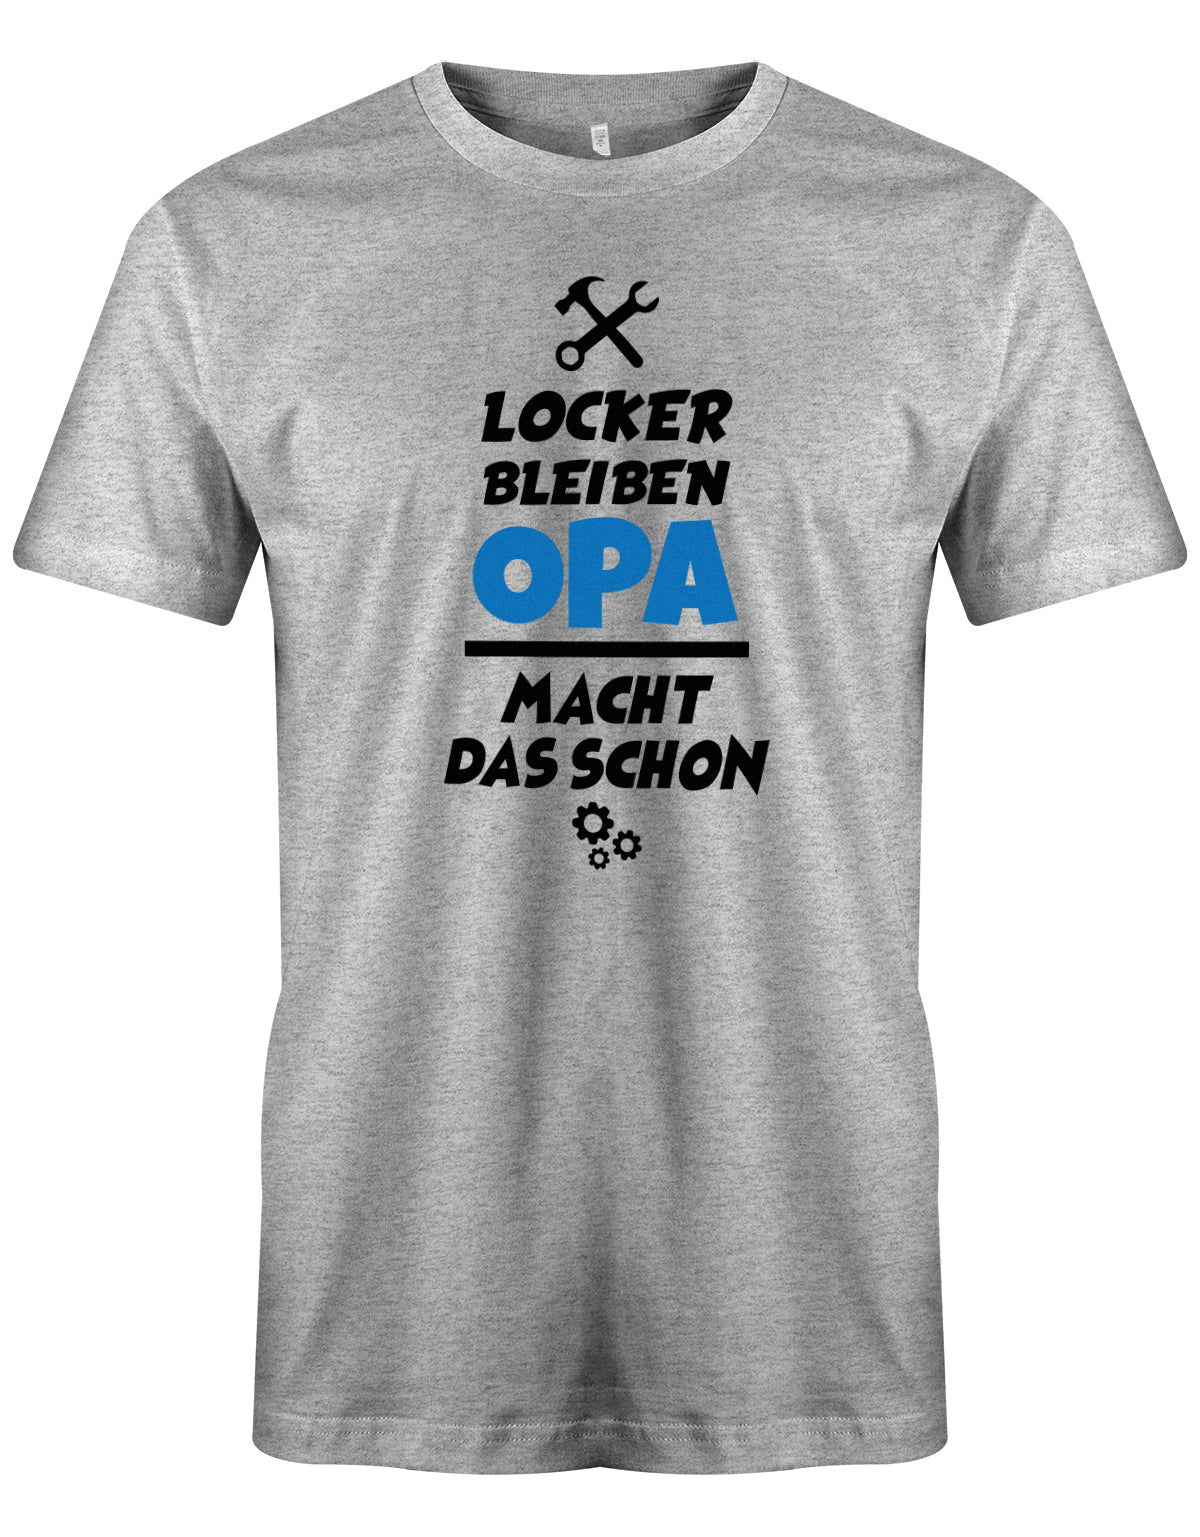 Opa T-Shirt – Locker bleiben, der Opa macht das schon. Grau